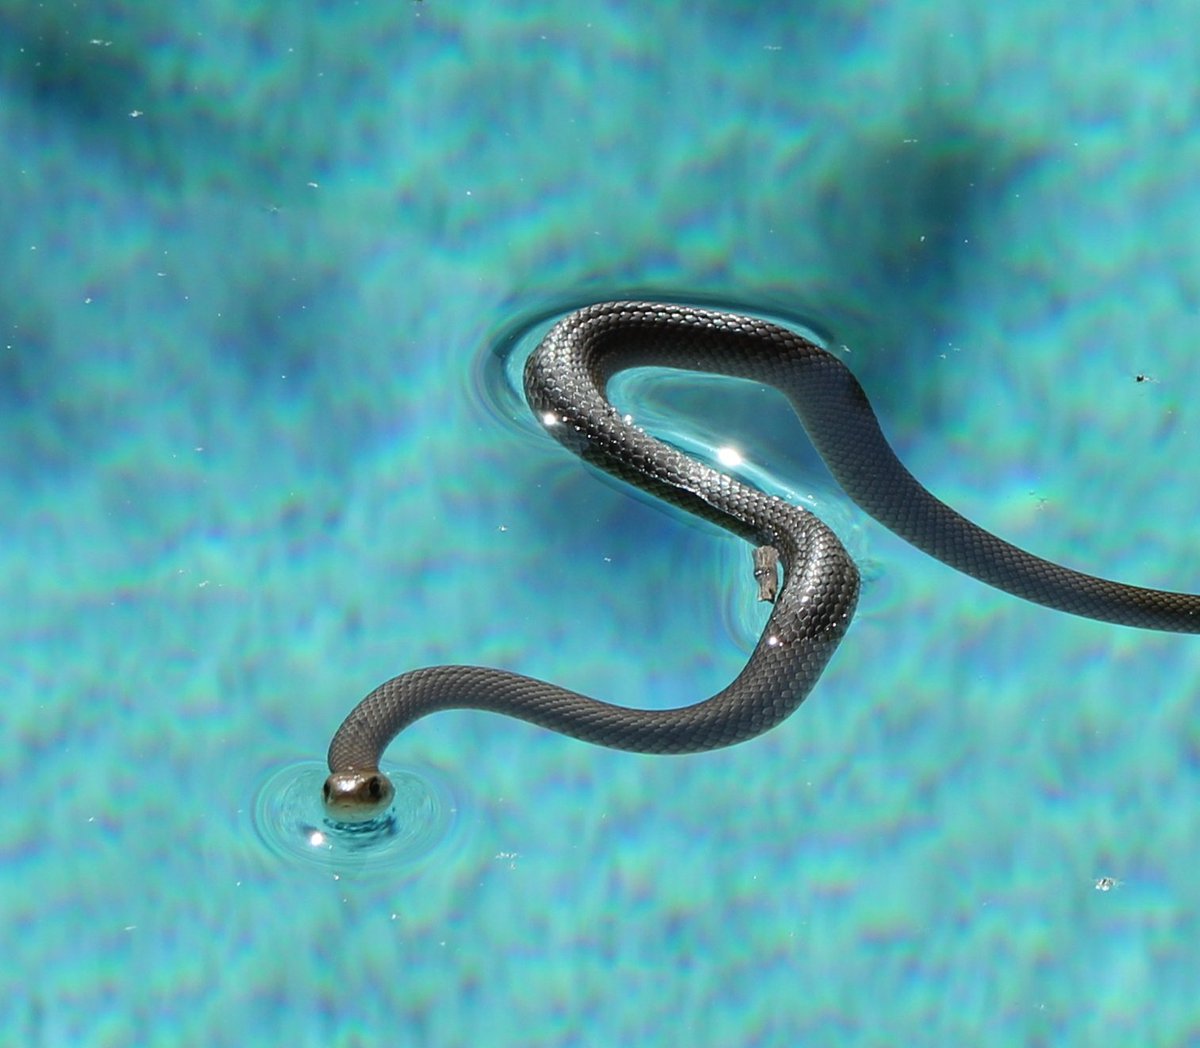 Snakeoutbrisbane On Twitter Gorgeous Little Eastern Brown Snake